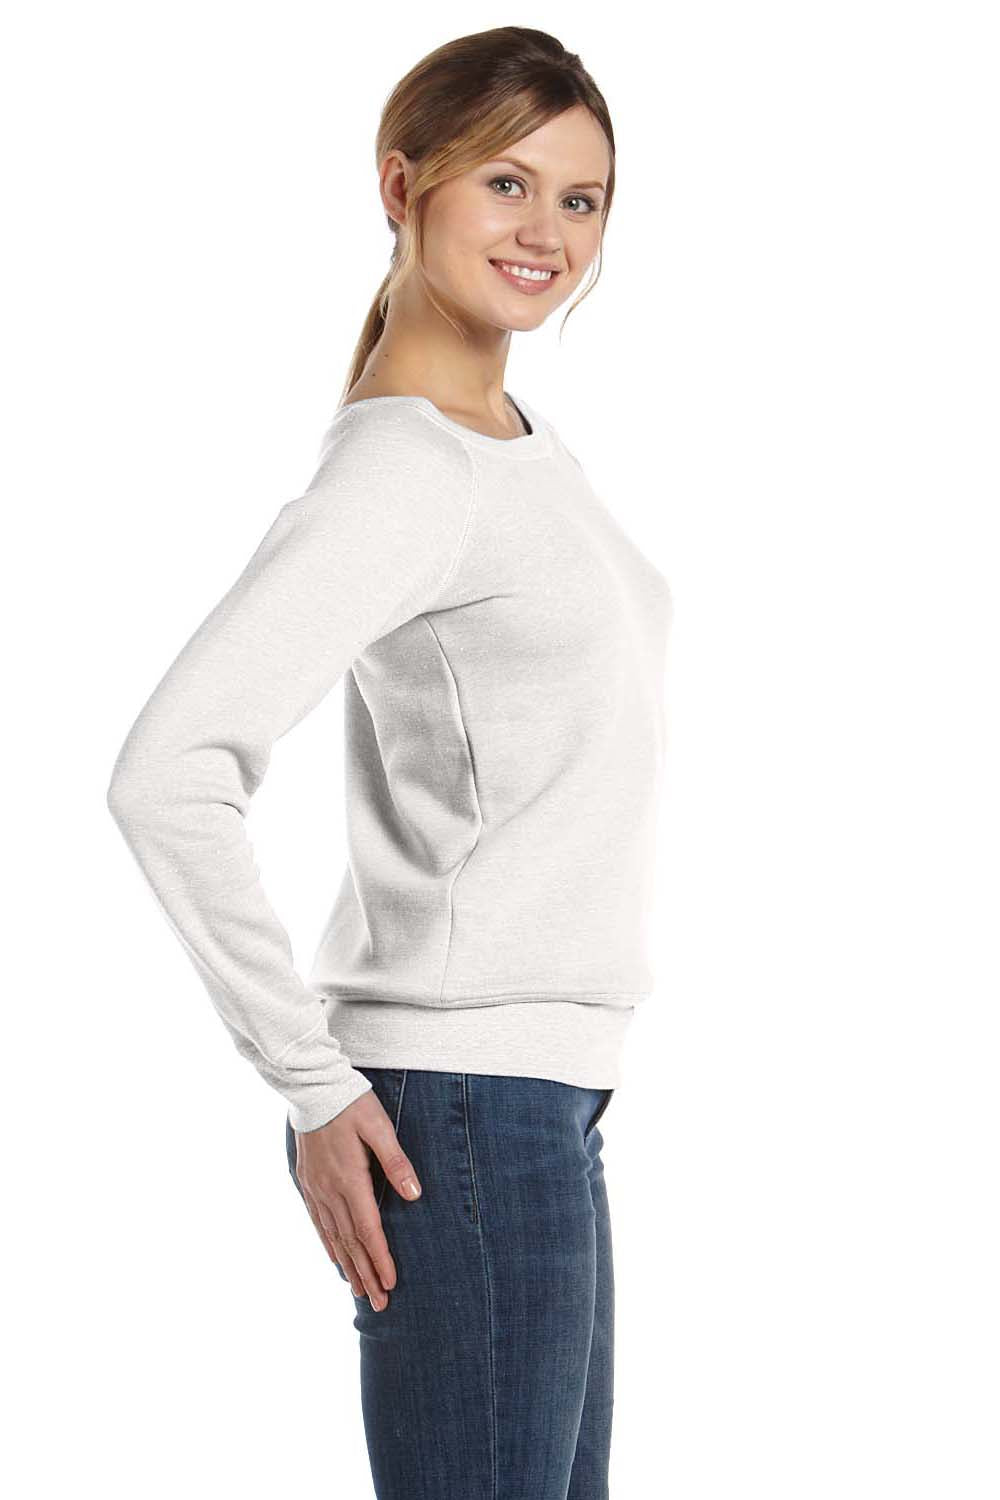 Bella + Canvas 7501 Womens Sponge Fleece Wide Neck Sweatshirt Solid White Model Side